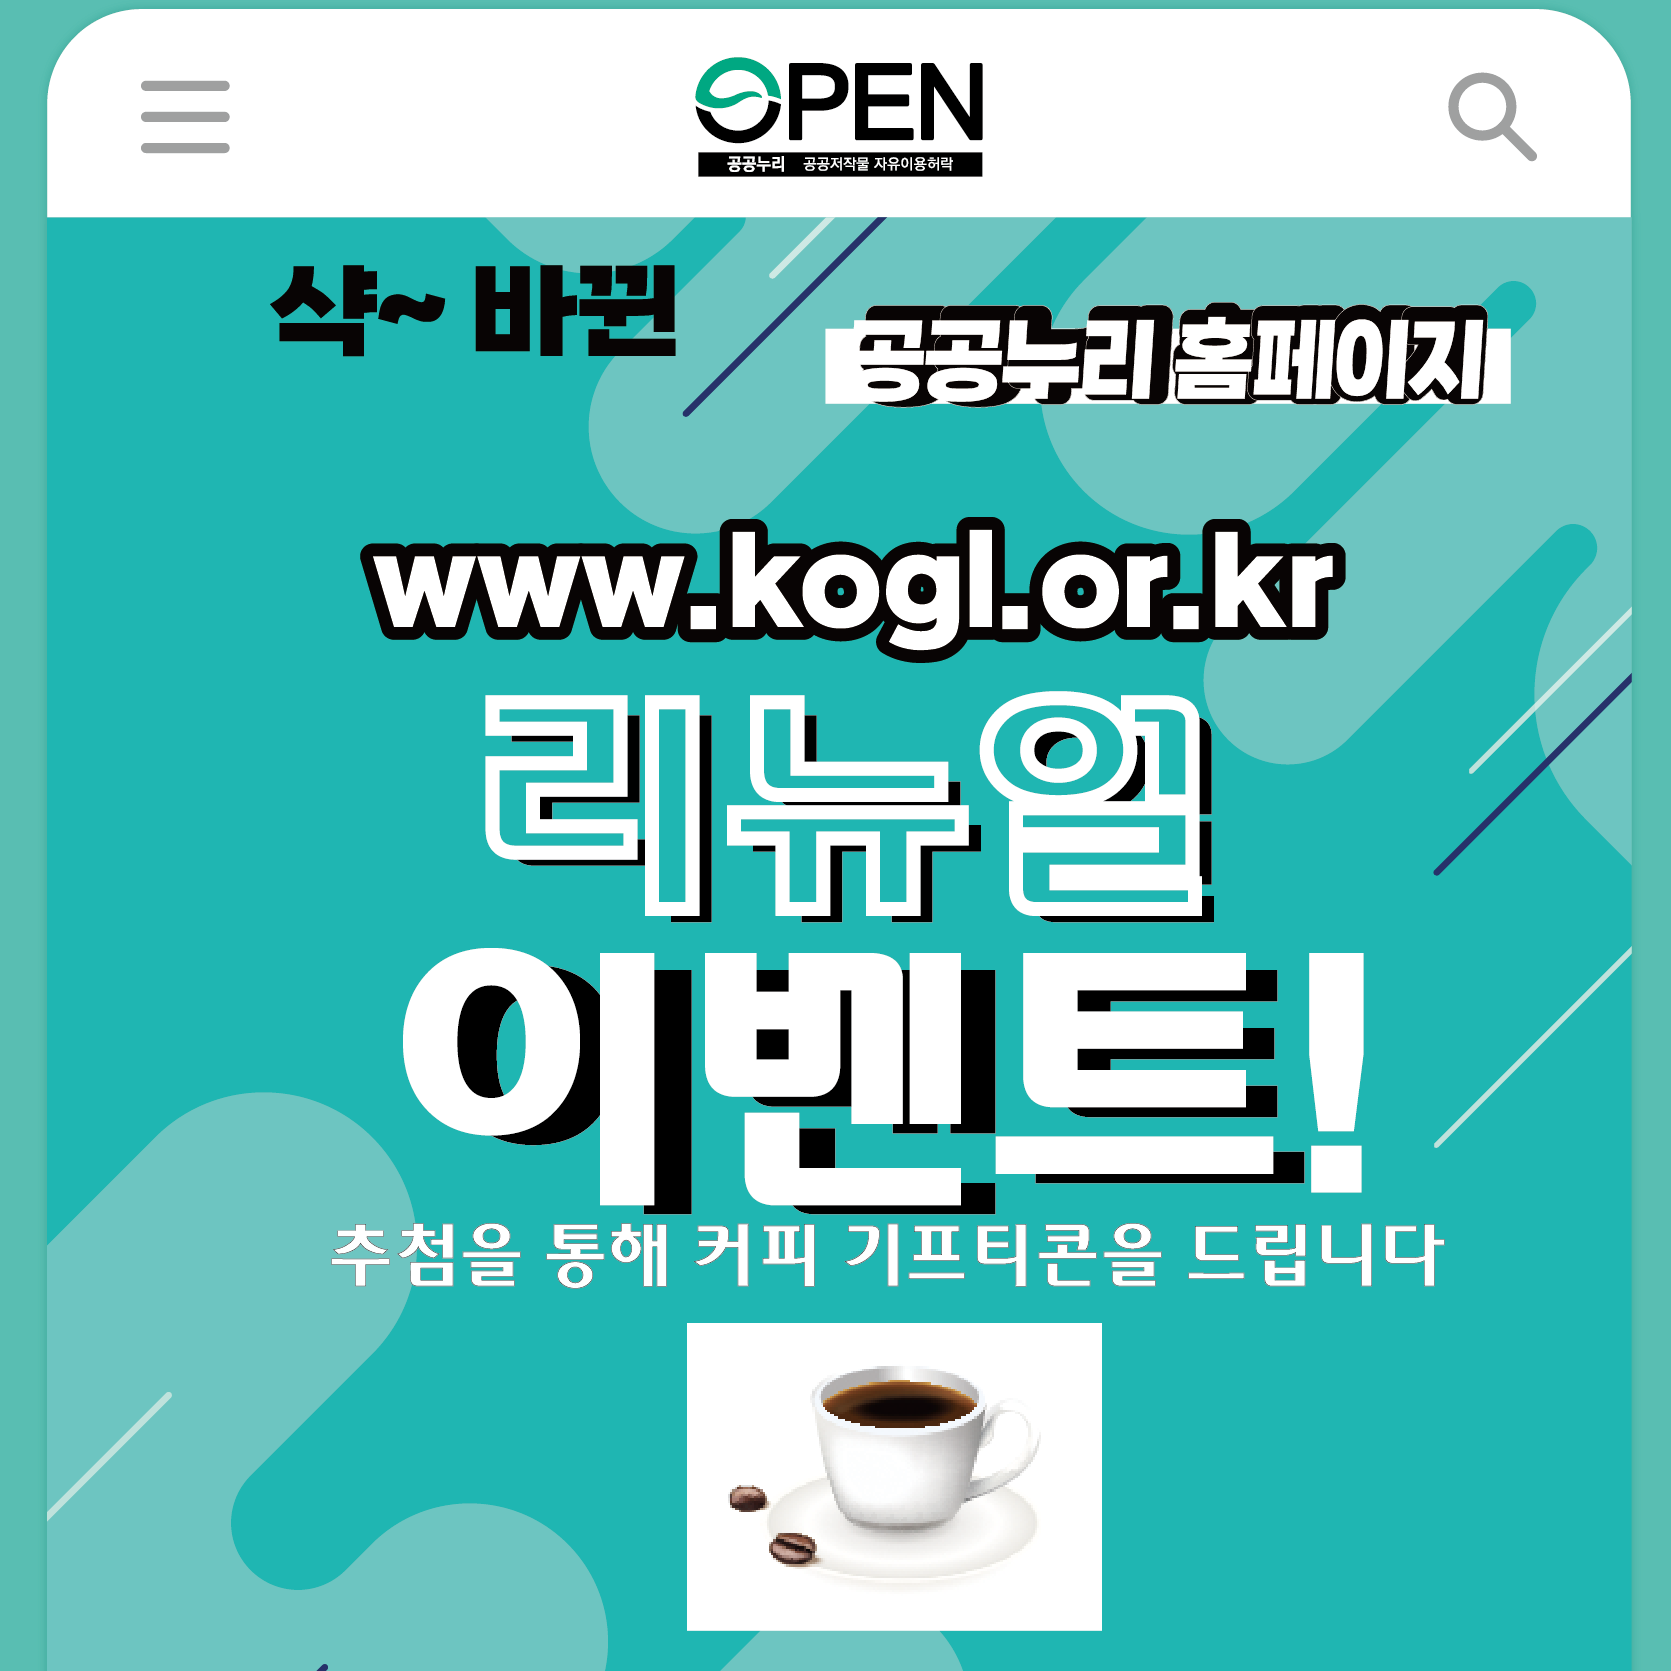 샥~바뀐 공공누리 홈페이지 www.kogl.or.kr 리큐얼 이벤트 추첨을 통해 커피 기프티콘을 드립니다